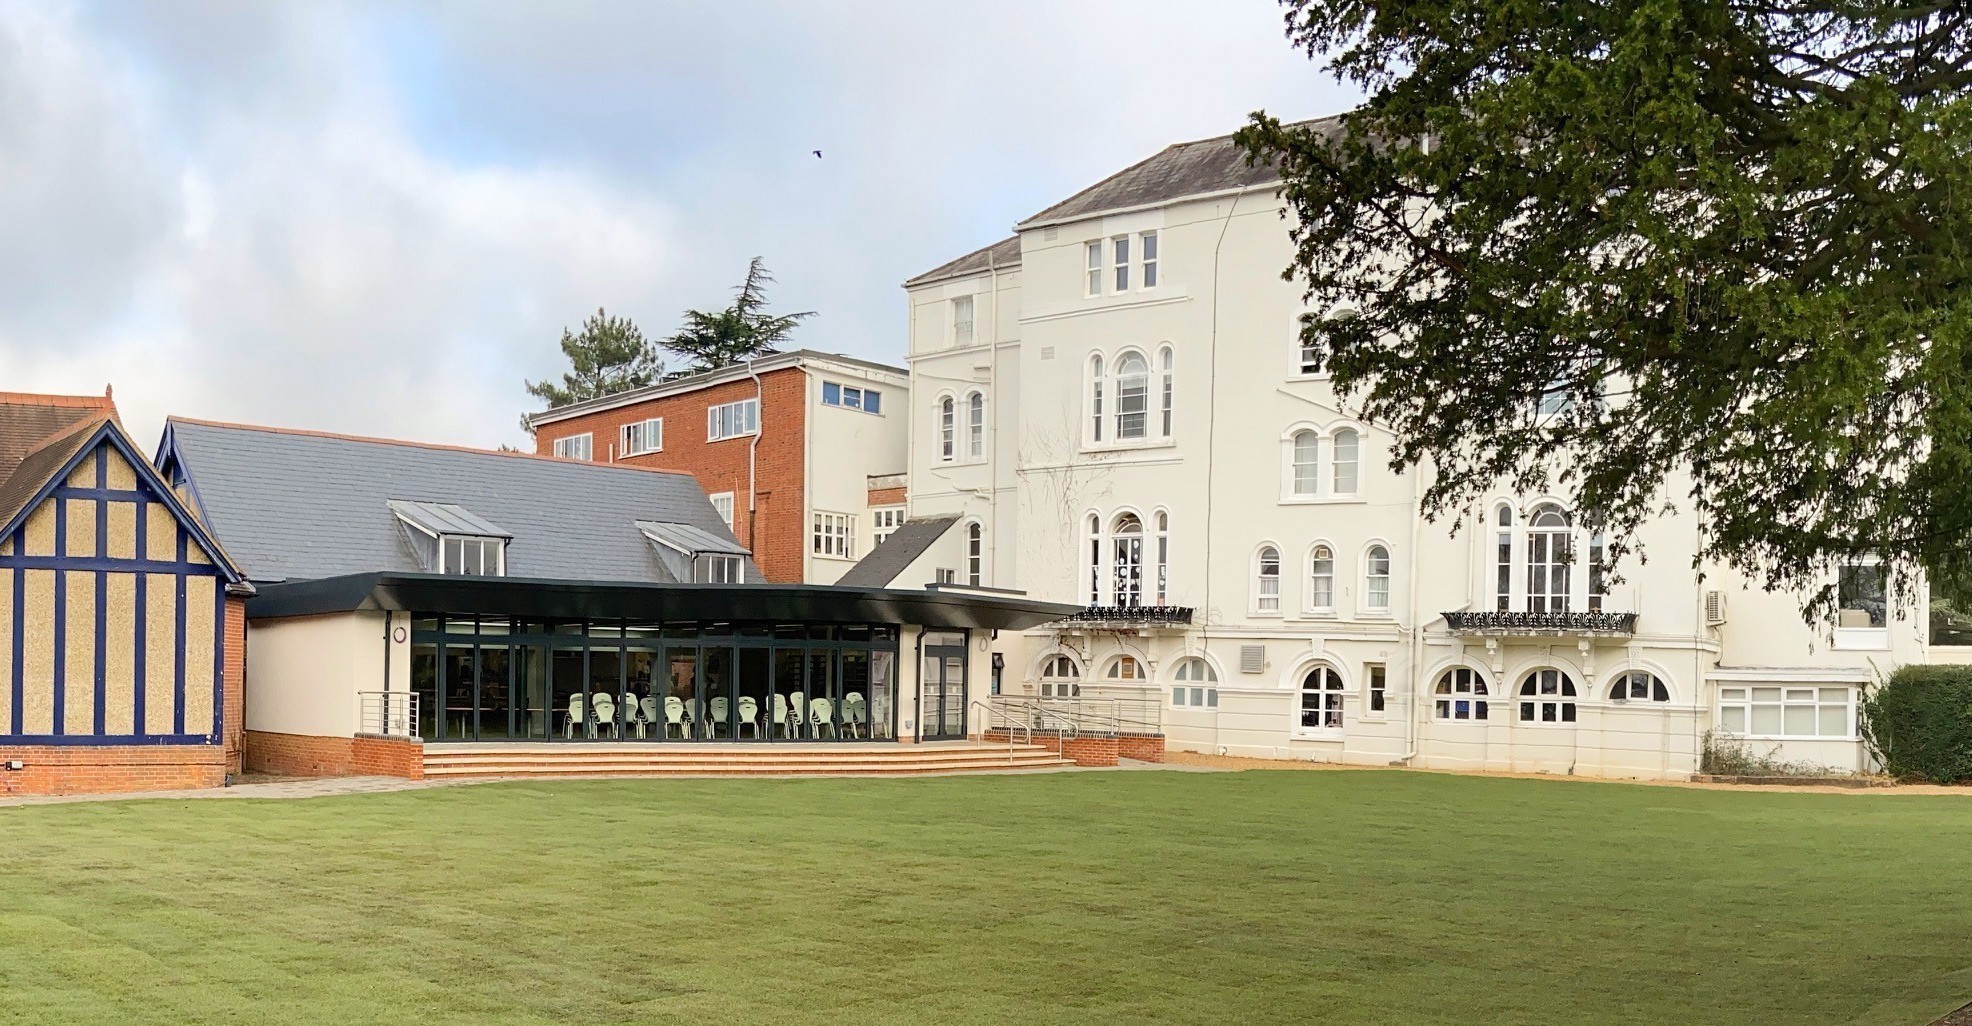 Lambrook School: Αυτό είναι το θρυλικό σχολείο “κλειστό club” όπου φοιτά το αύριο της βρετανικής βασιλικής οικογένειας